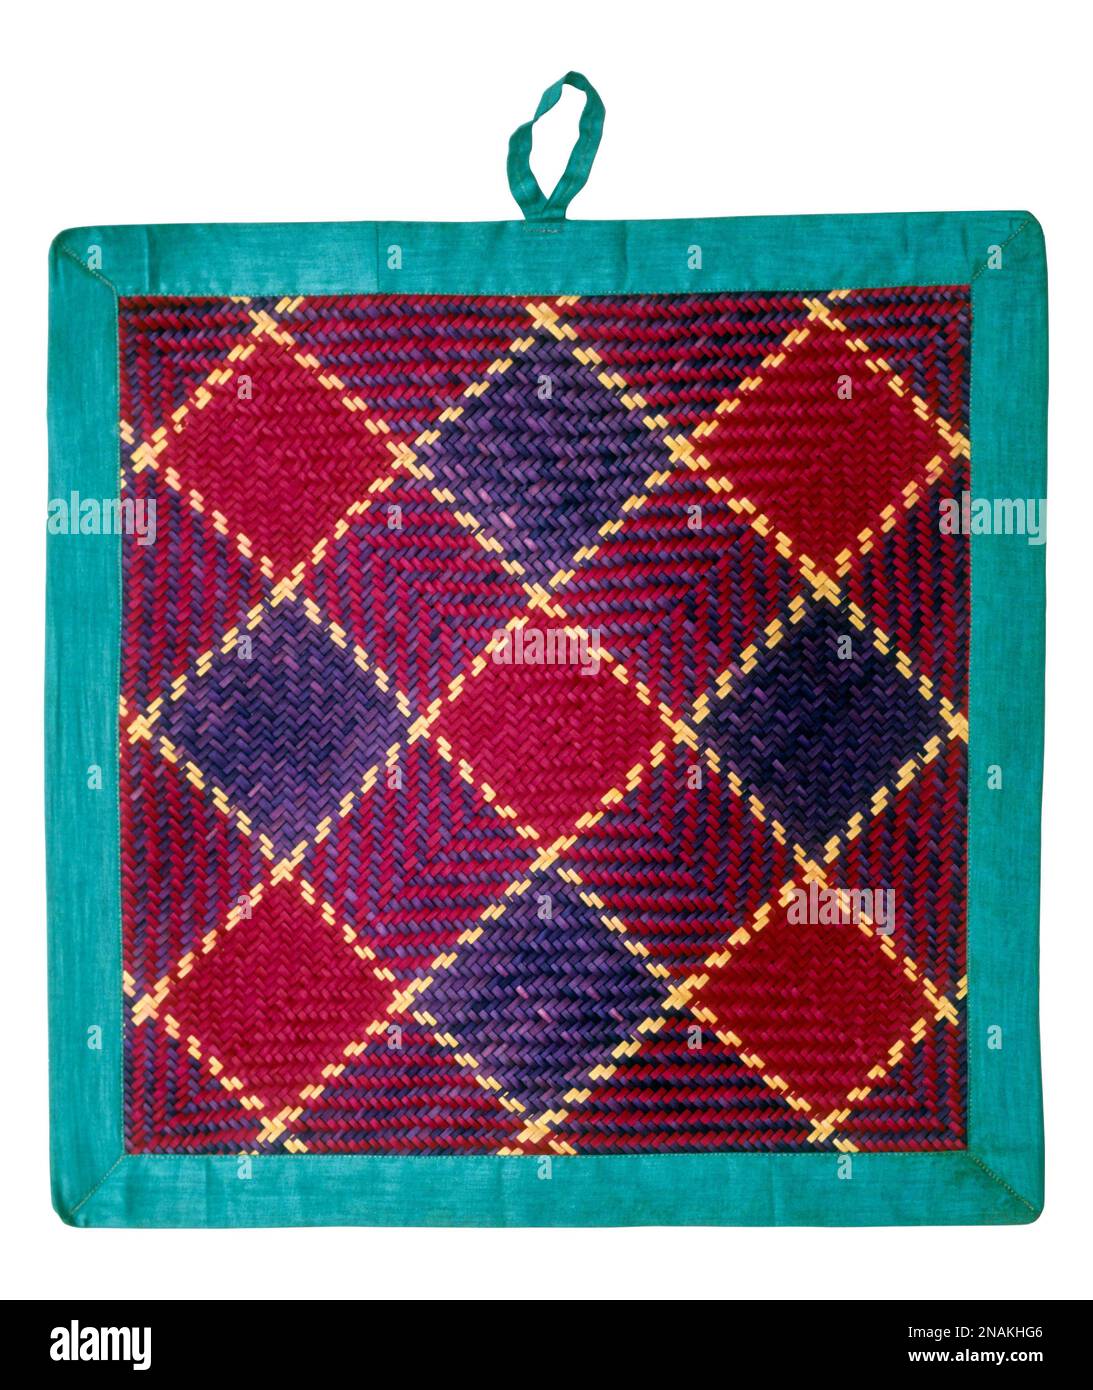 Découpe, tapis conçu pour les personnes à s'asseoir pendant leur repas ou pendant leurs rituels, tapis tissés recouverts de tissu appliqué à Chettinad, Tamil Nadu, Inde, Asie Banque D'Images